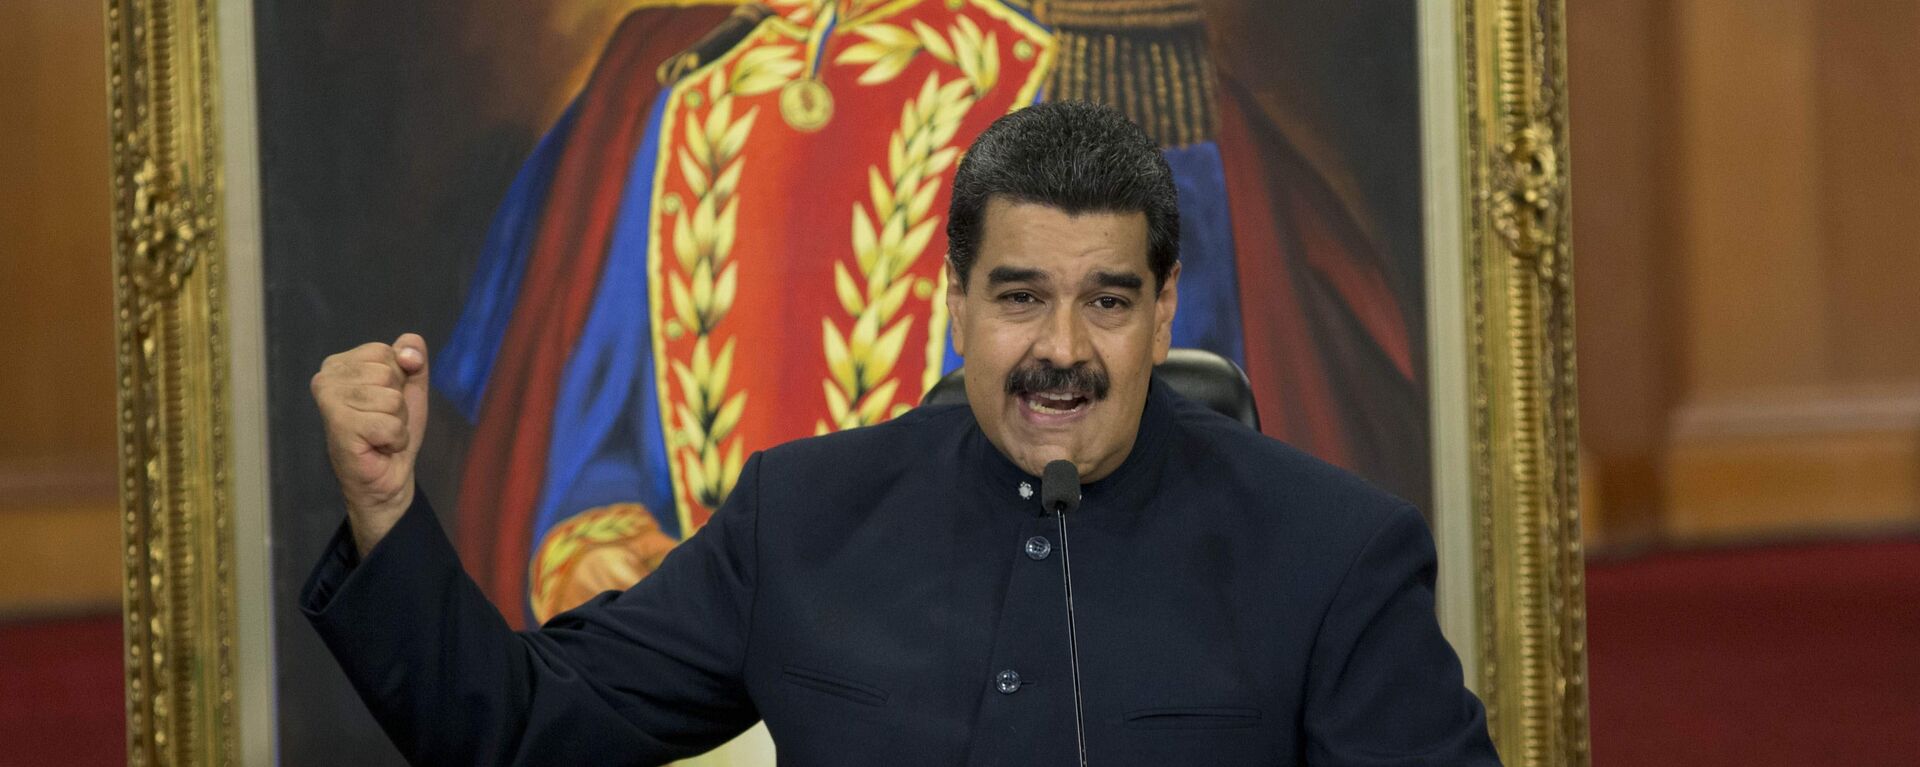 Nicolás Maduro, presidente de Venezuela - Sputnik Mundo, 1920, 03.12.2021